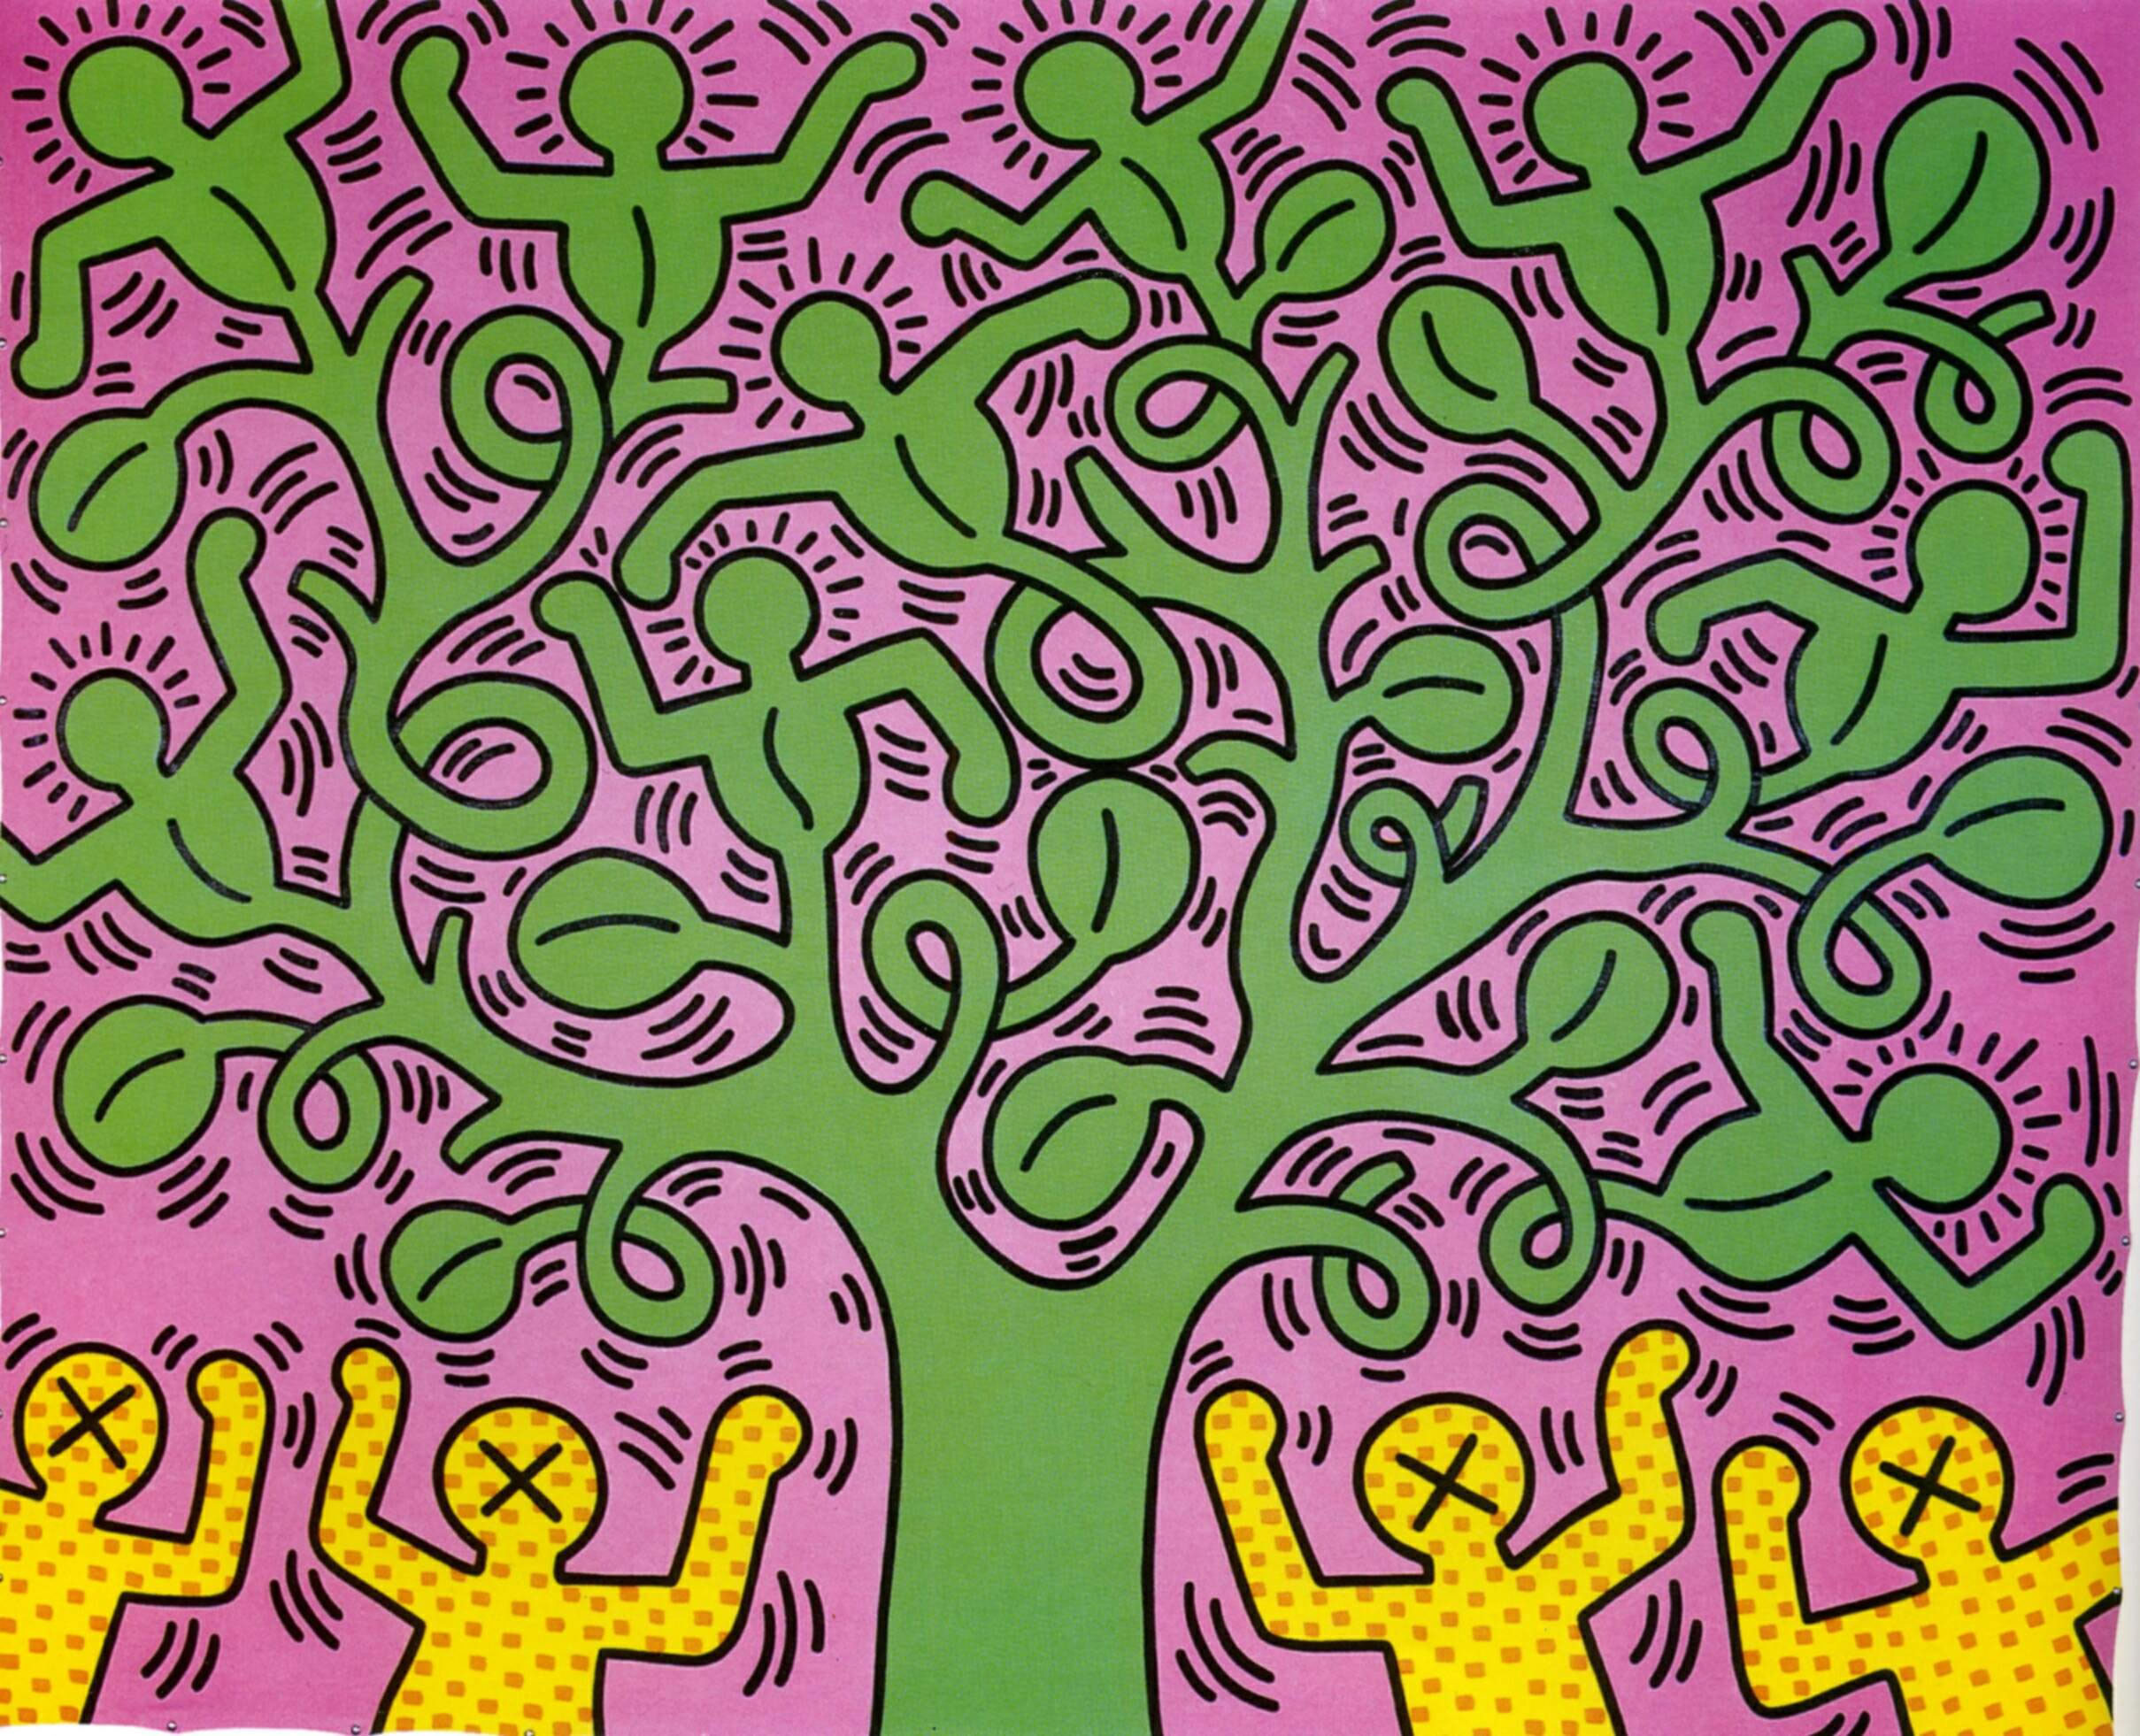 Keith Haring photo free download desktop 16